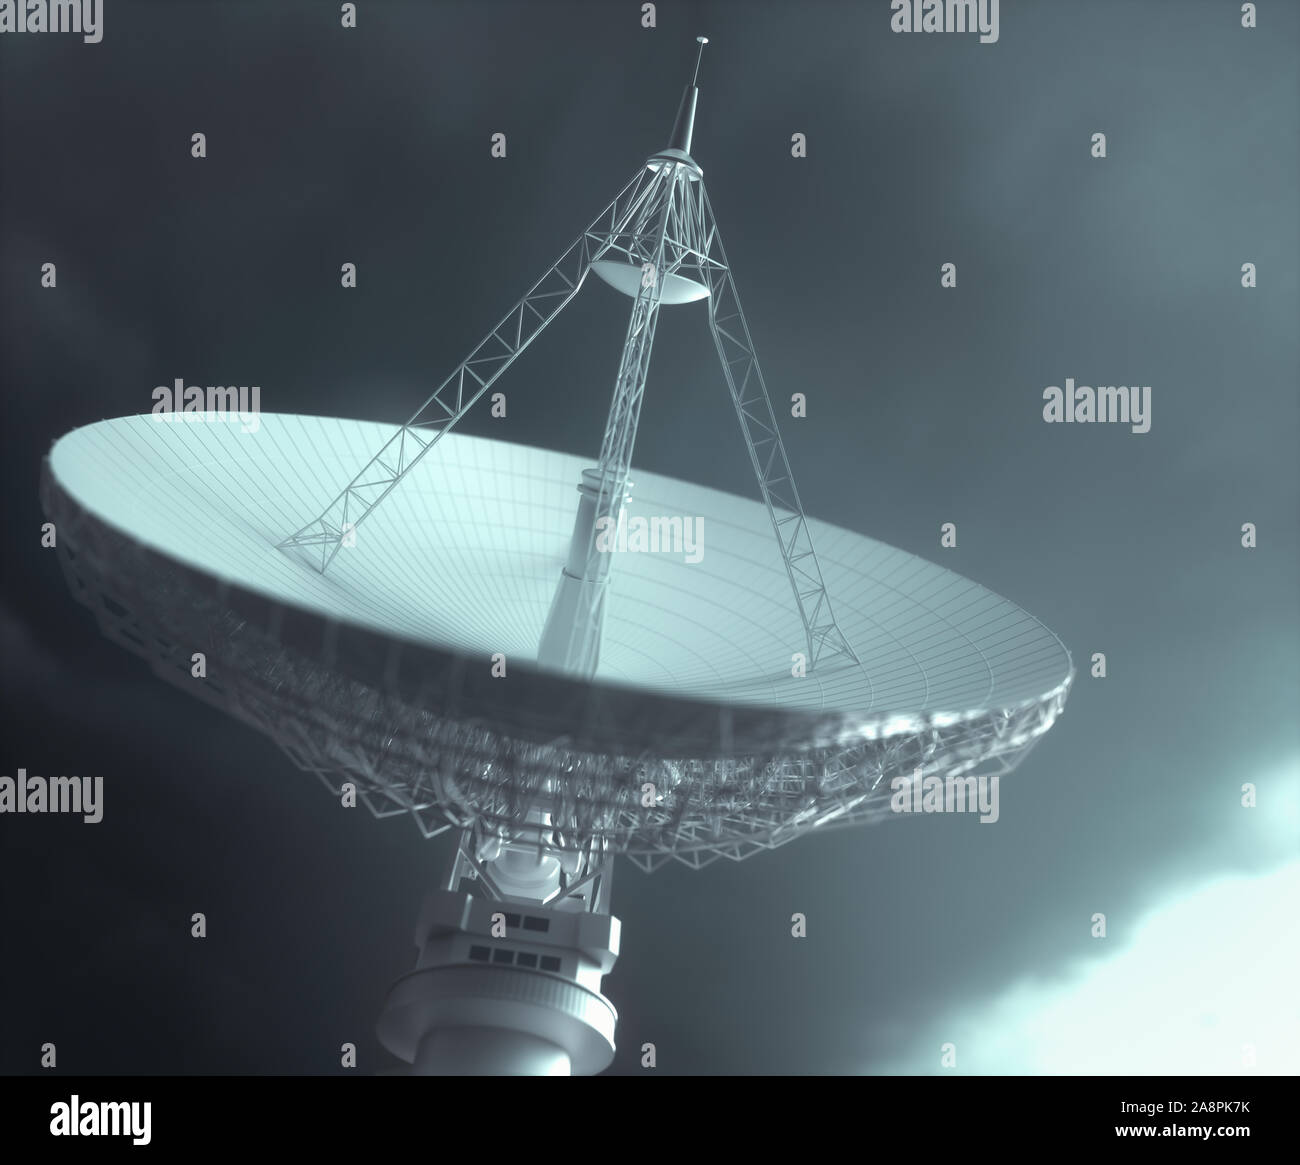 Enorme plato de antena de satélite para la comunicación y la recepción de la señal fuera del planeta Tierra. Trazado de recorte incluido. Ilustración 3D. Foto de stock